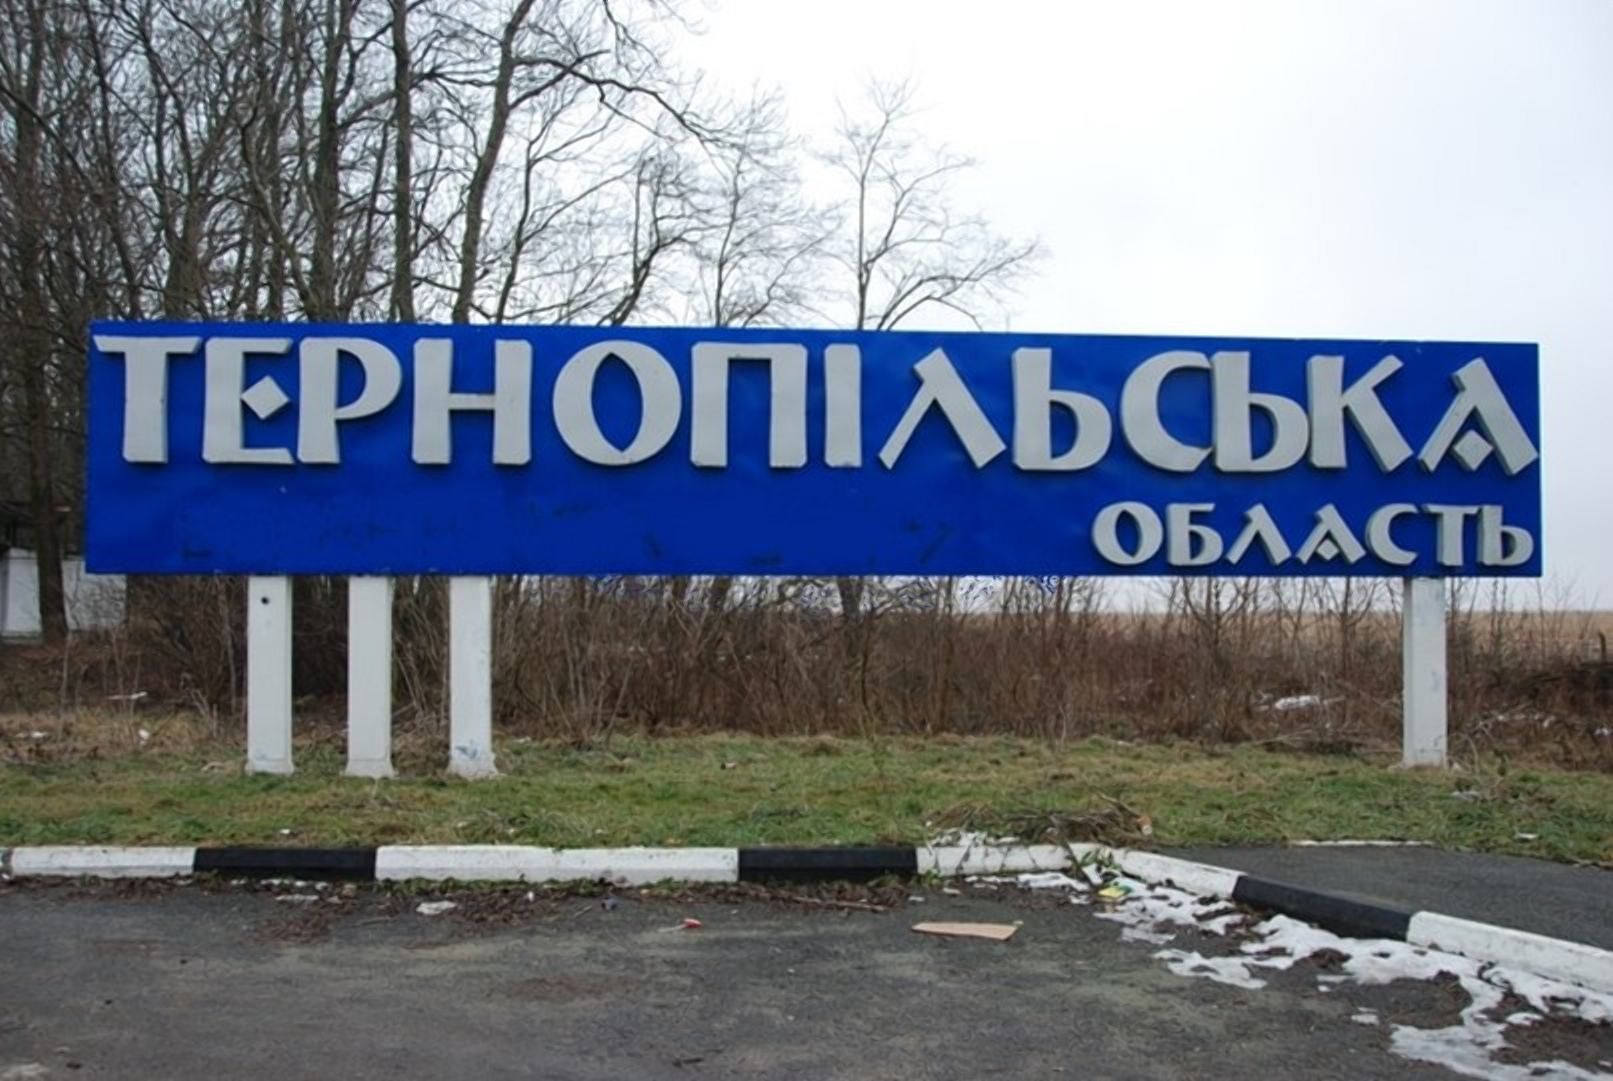 52 предприятия планируют перевести производство на Тернопольщину, из них 3 уже работают – ОВА - 24 Канал